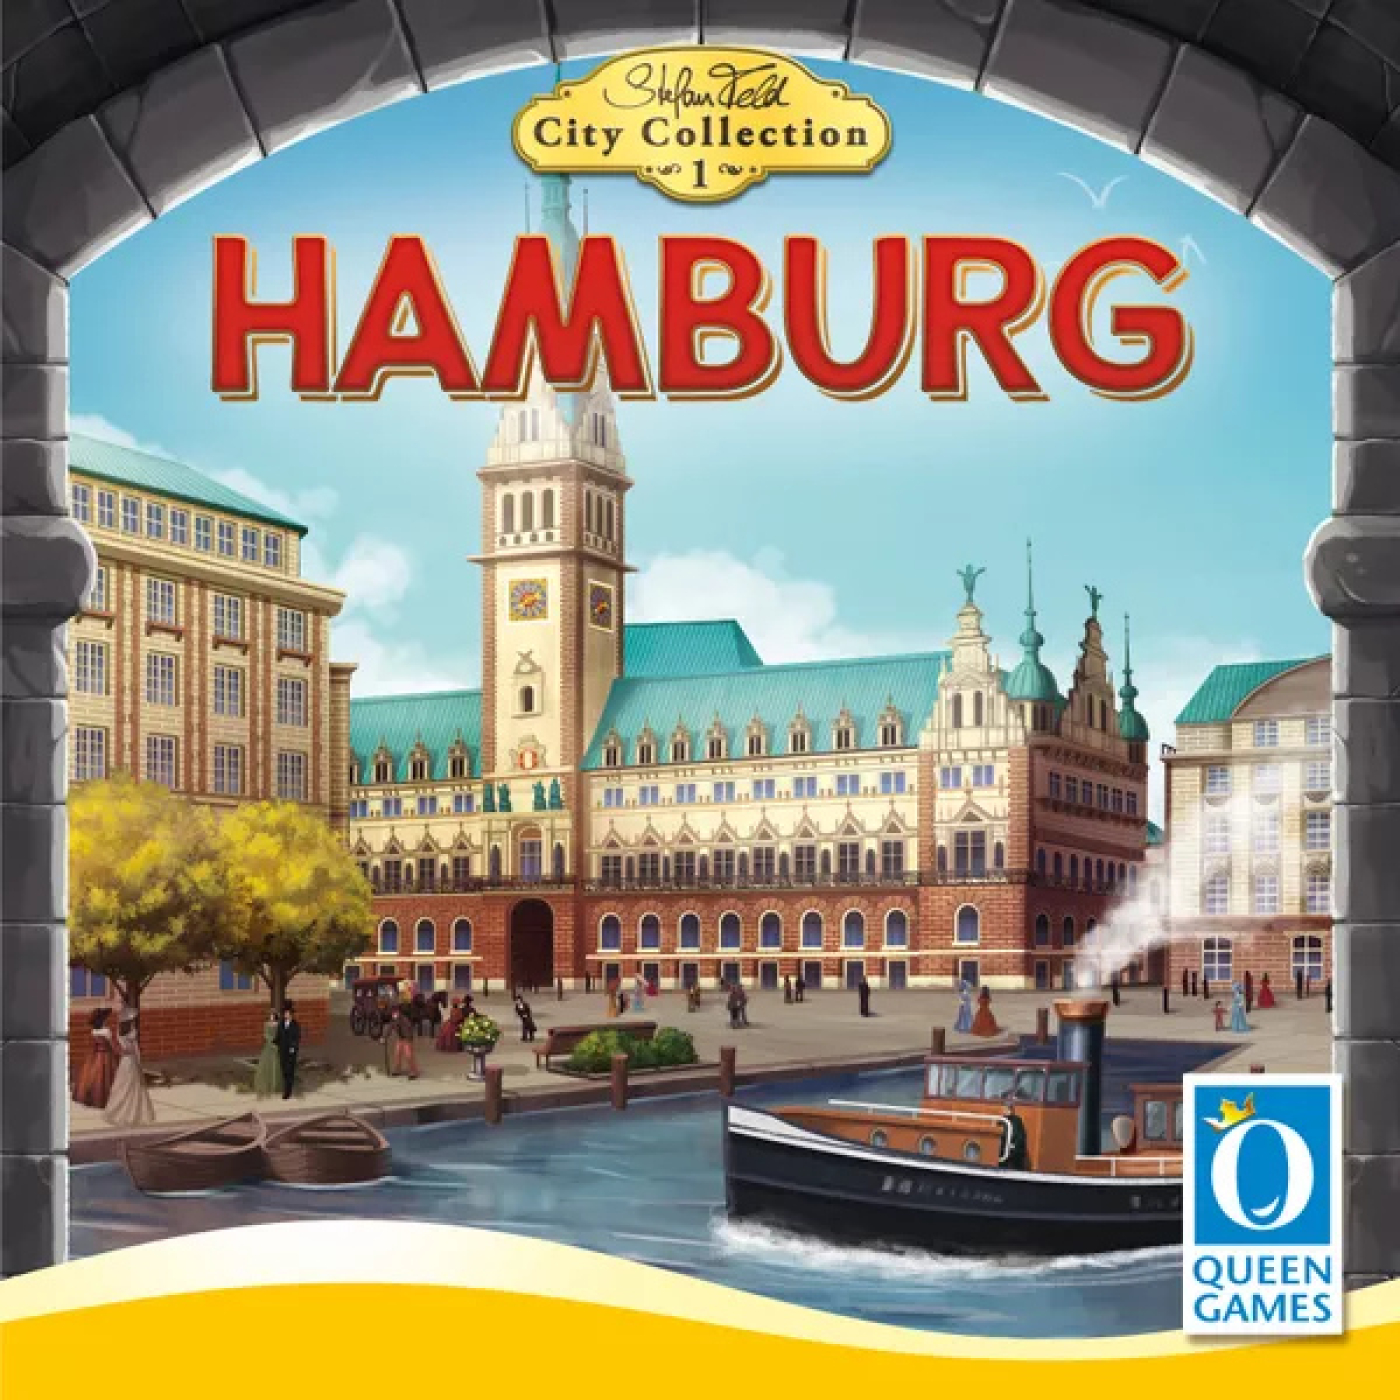 Episodio 41 - Hamburgo,el intento de colar nuevas secciones y la importancia de un buen presidente